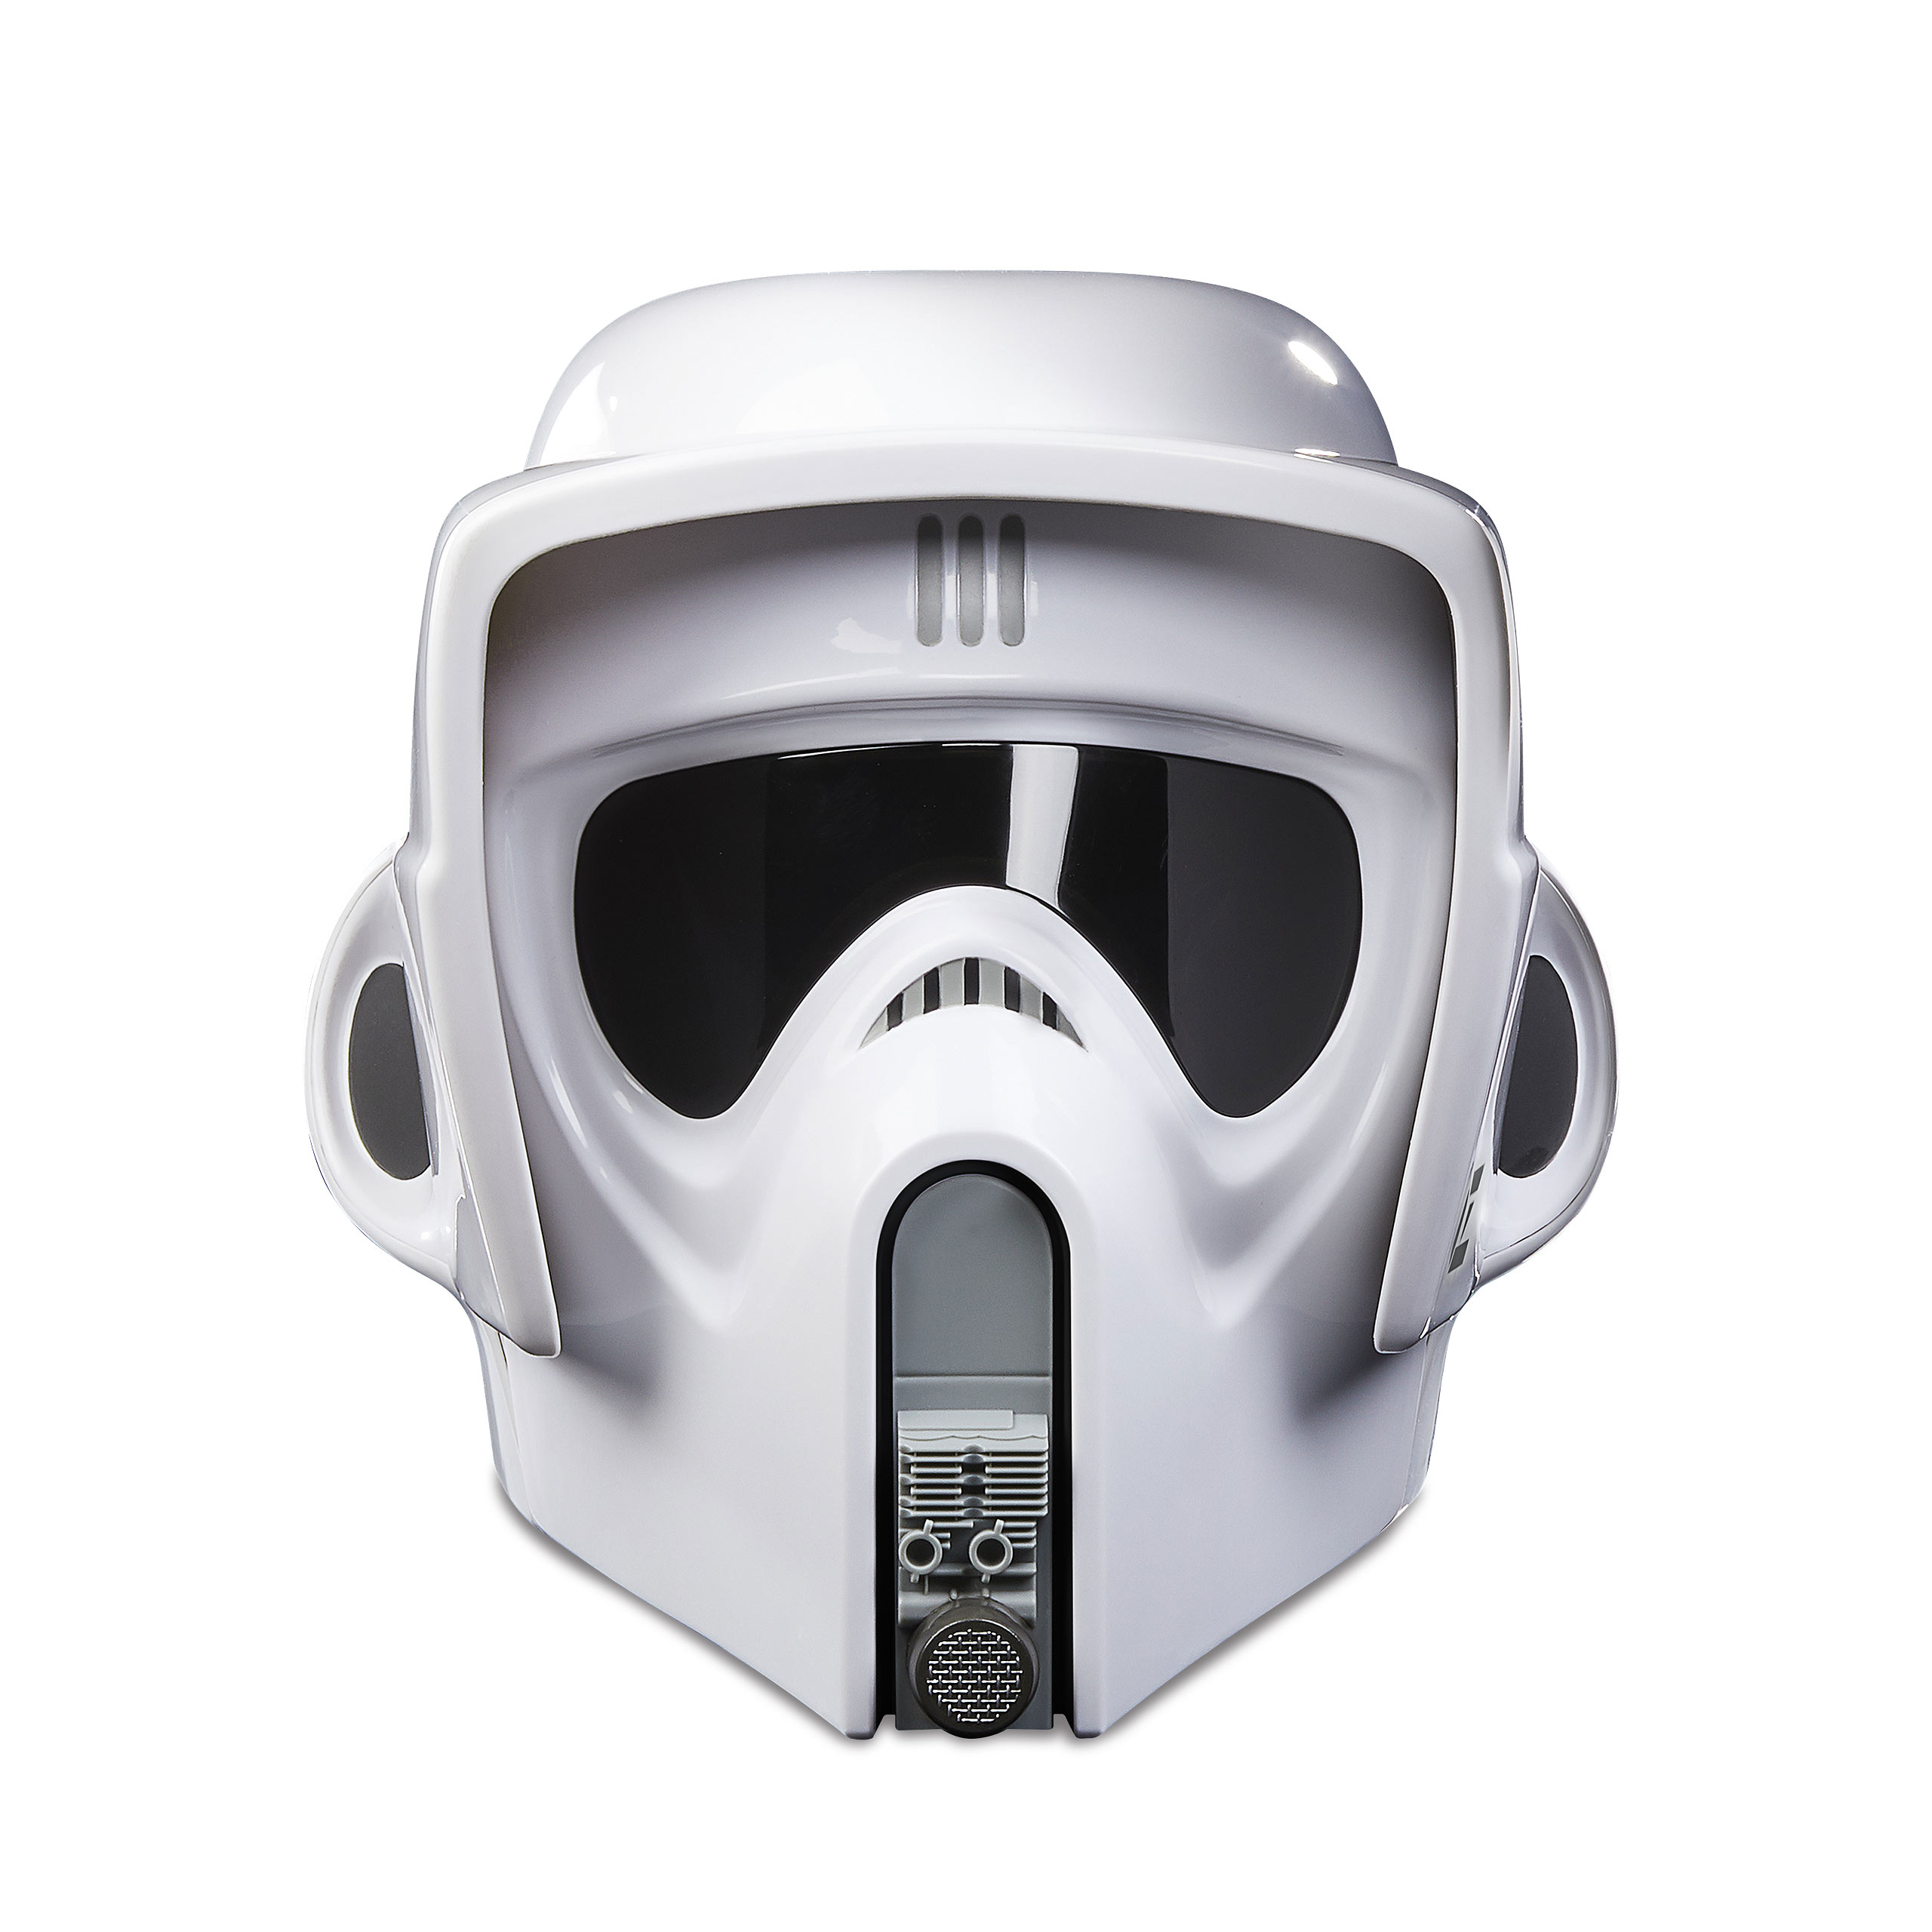 Star Wars - Scout Trooper Black Series Premium Helm